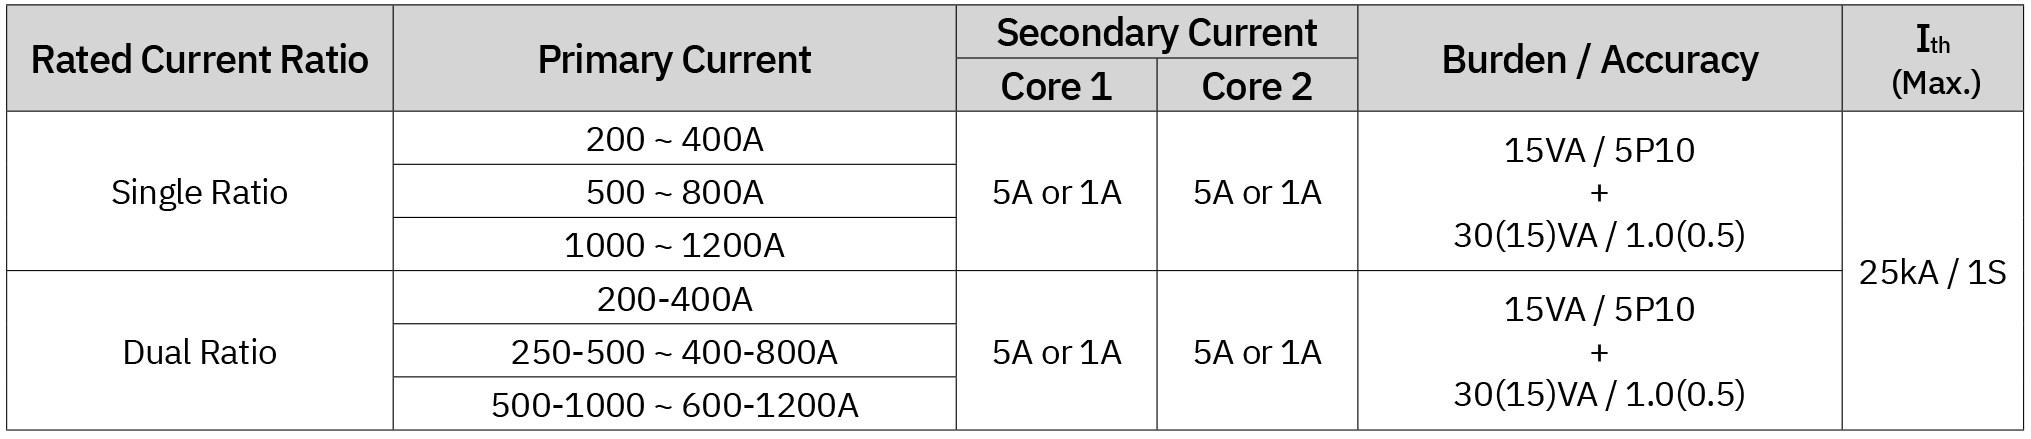 Tabla de especificaciones para transformador de corriente de resina epoxi de dos núcleos de 3.6 kV (ER-3C)